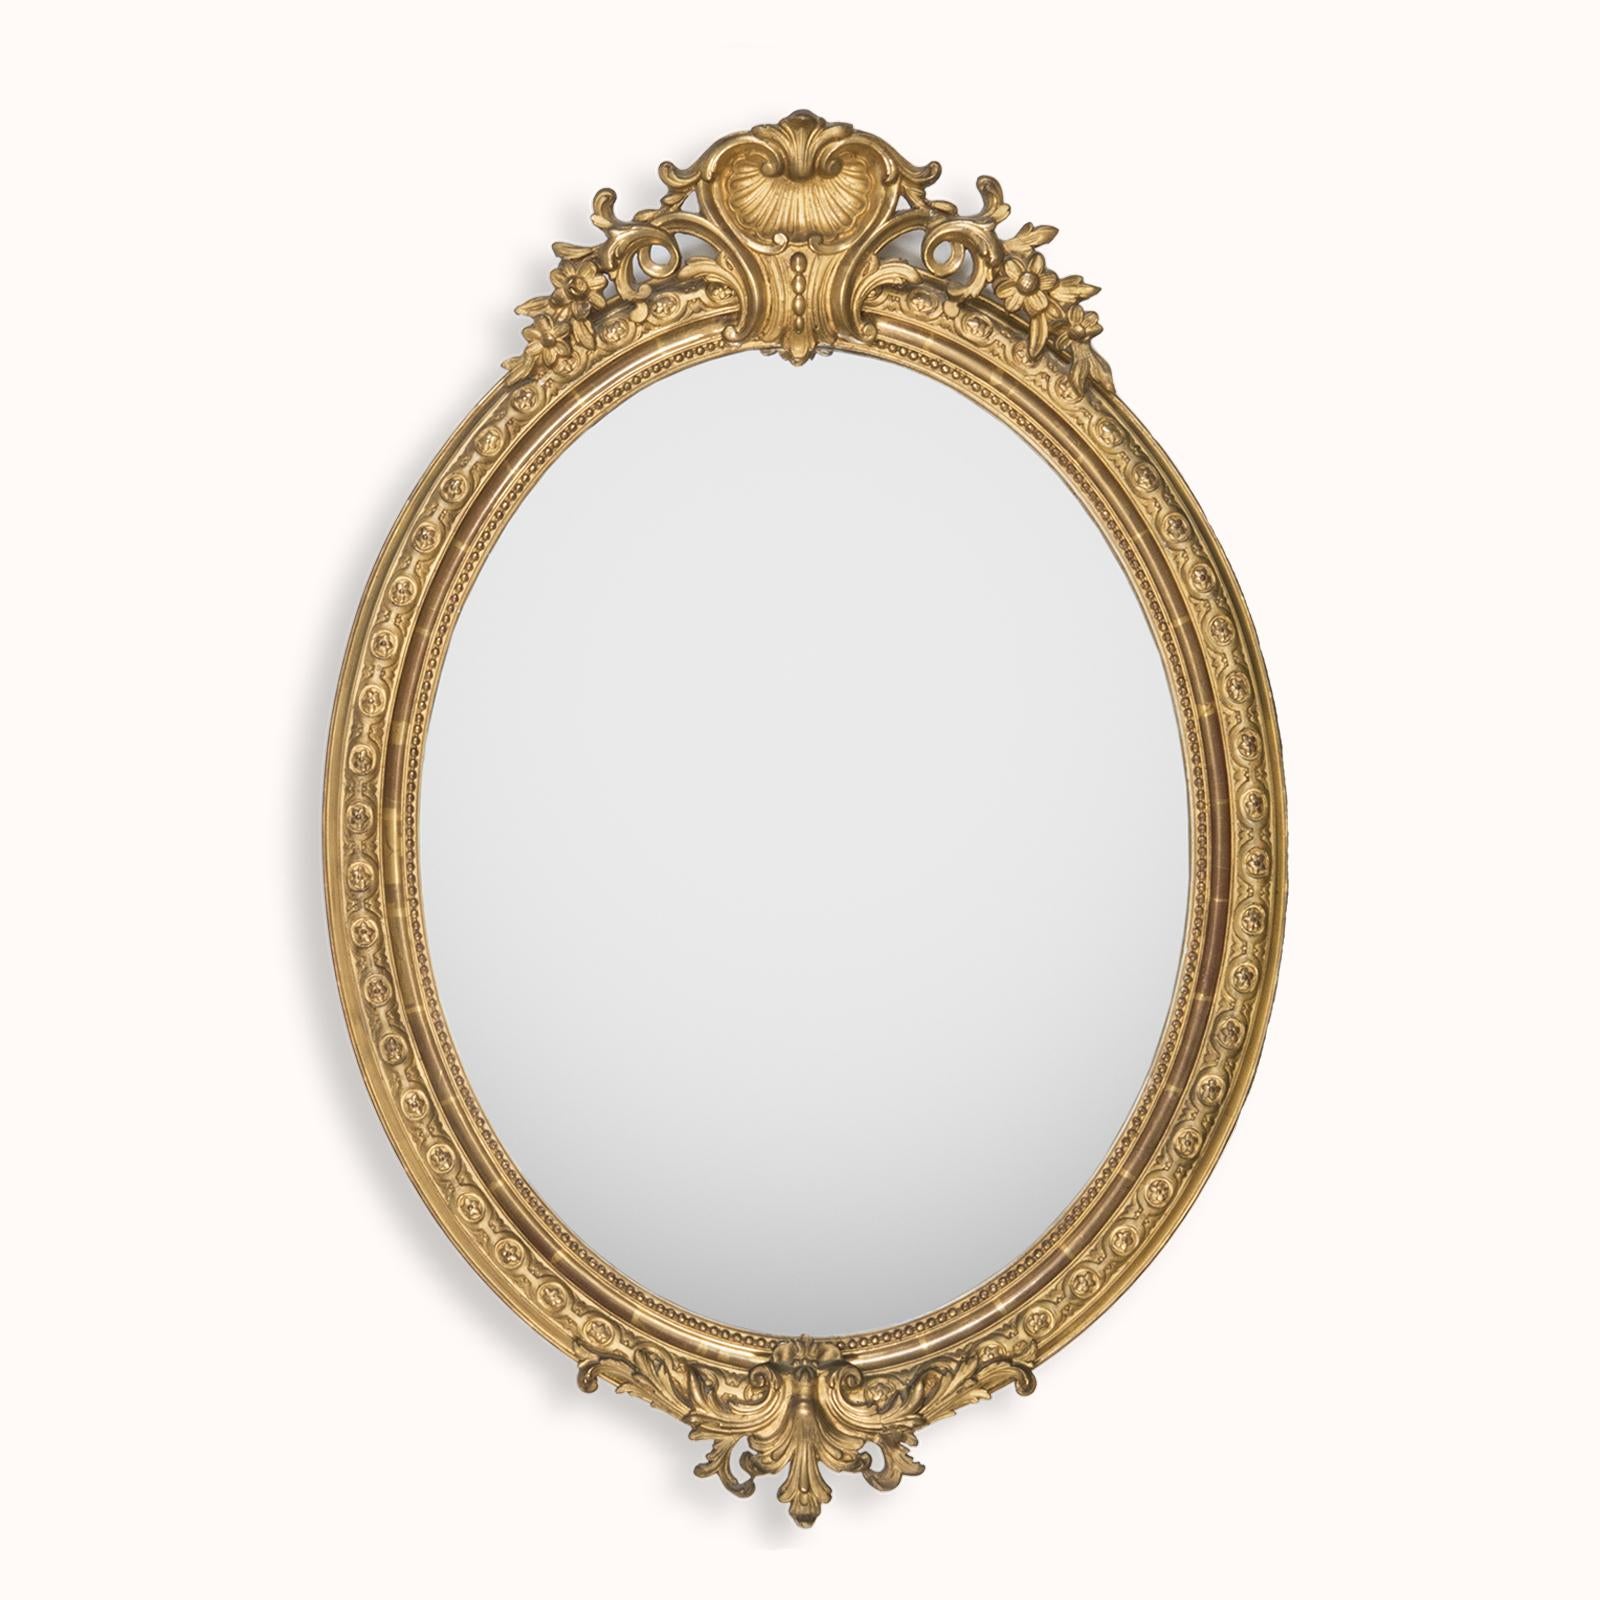 Ravissant miroir ovale doré français du XIXe siècle, orné d'un écusson en forme de coquillage.

Admirez la beauté de ce miroir ovale français ancien, une pièce intemporelle fabriquée en France vers l'année 1880.

Le cadre du miroir présente des